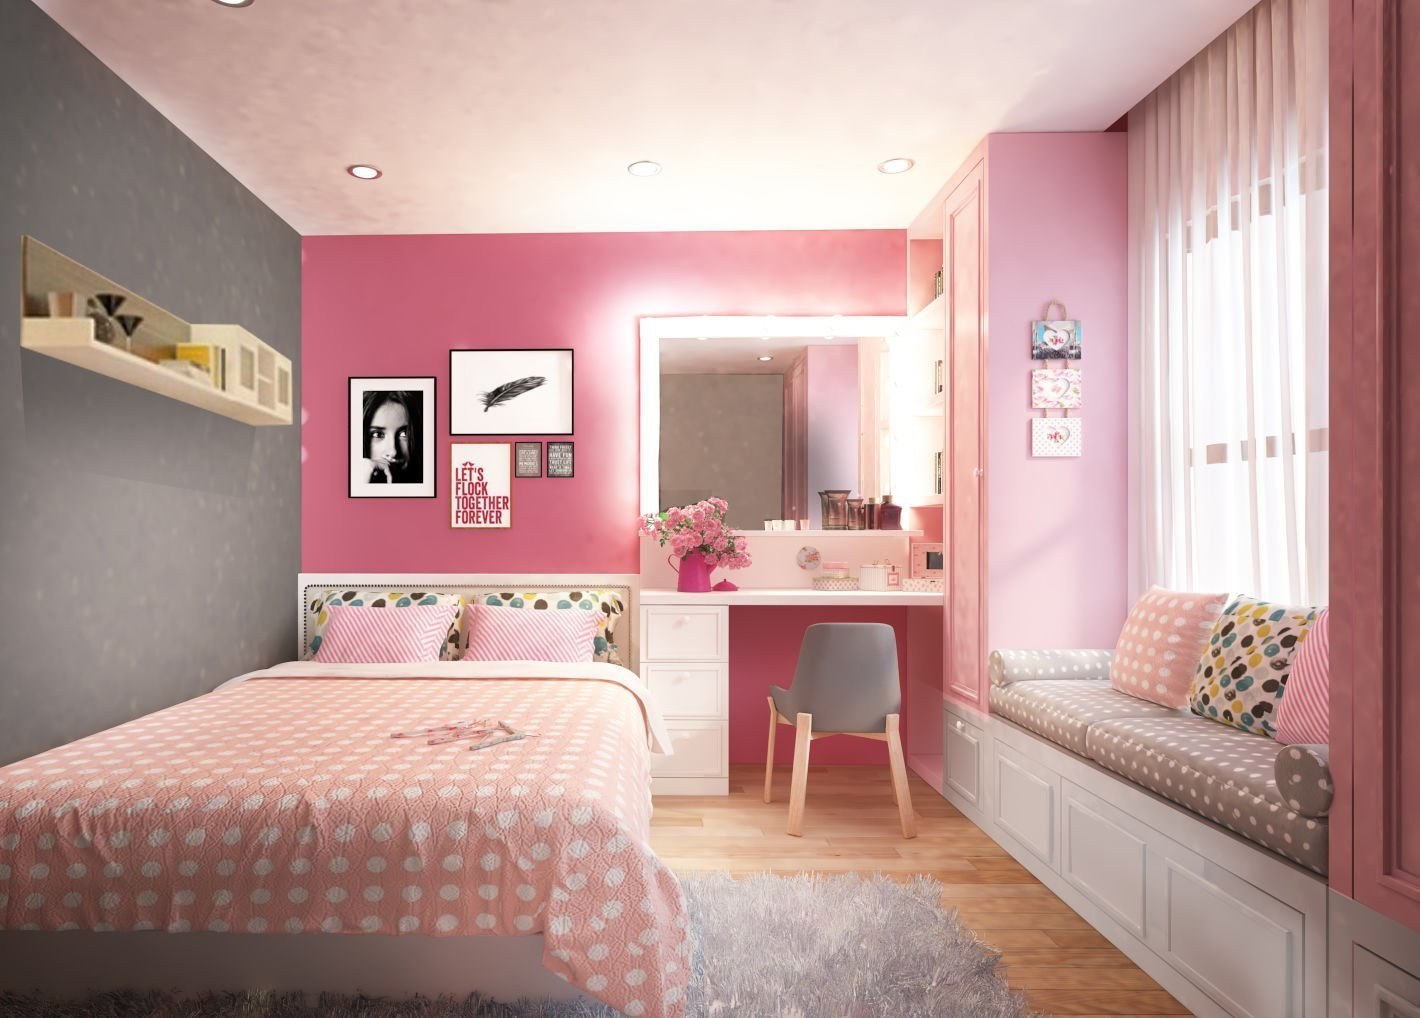 8 cách trang trí phòng ngủ nhỏ đơn giản mà đẹp dễ thực hiện